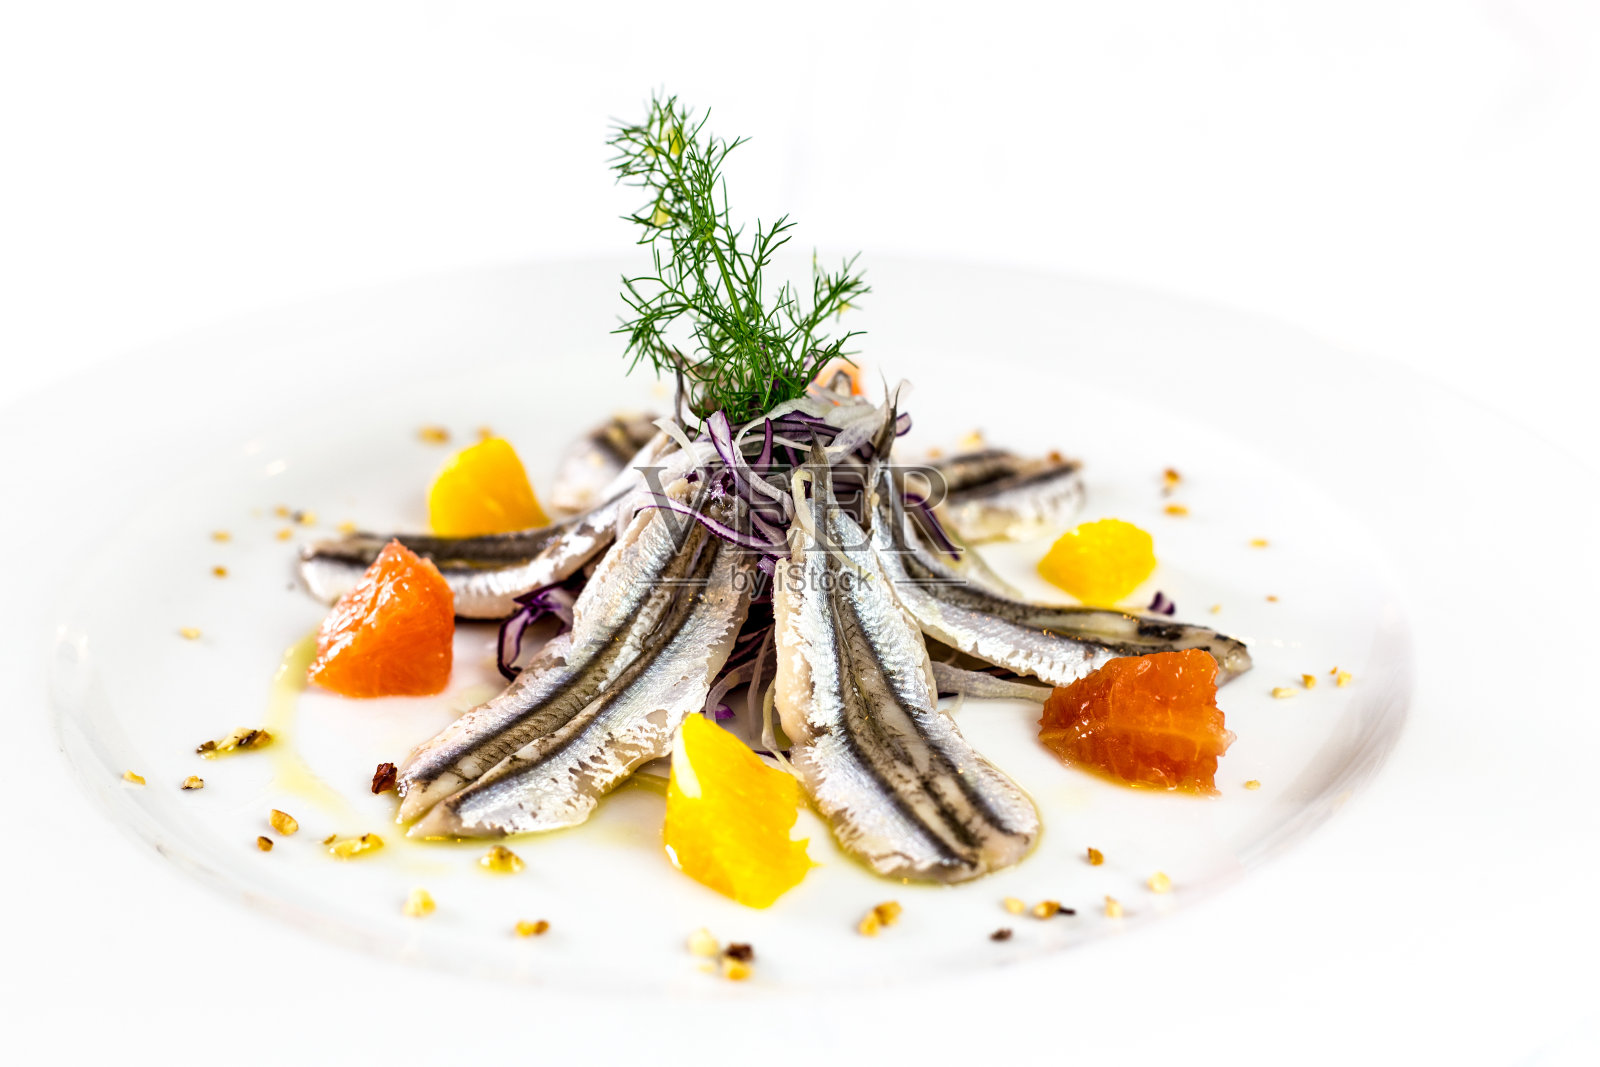 腌制凤尾鱼。美食餐厅意大利菜。白色背景照片摄影图片